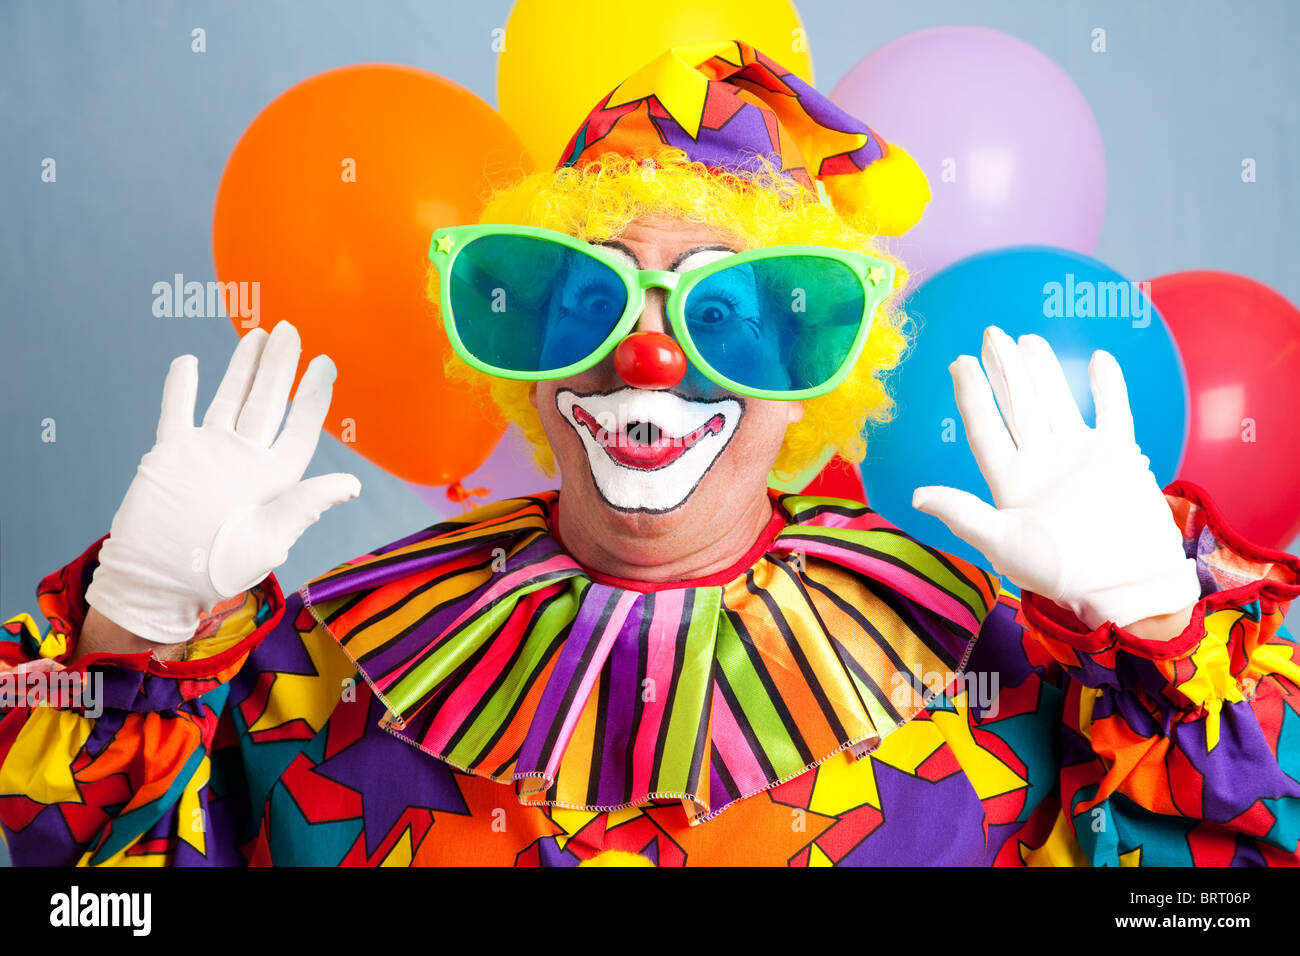 Silly clown in grandi bicchieri, facendo una sorpresa di fronte. Foto Stock